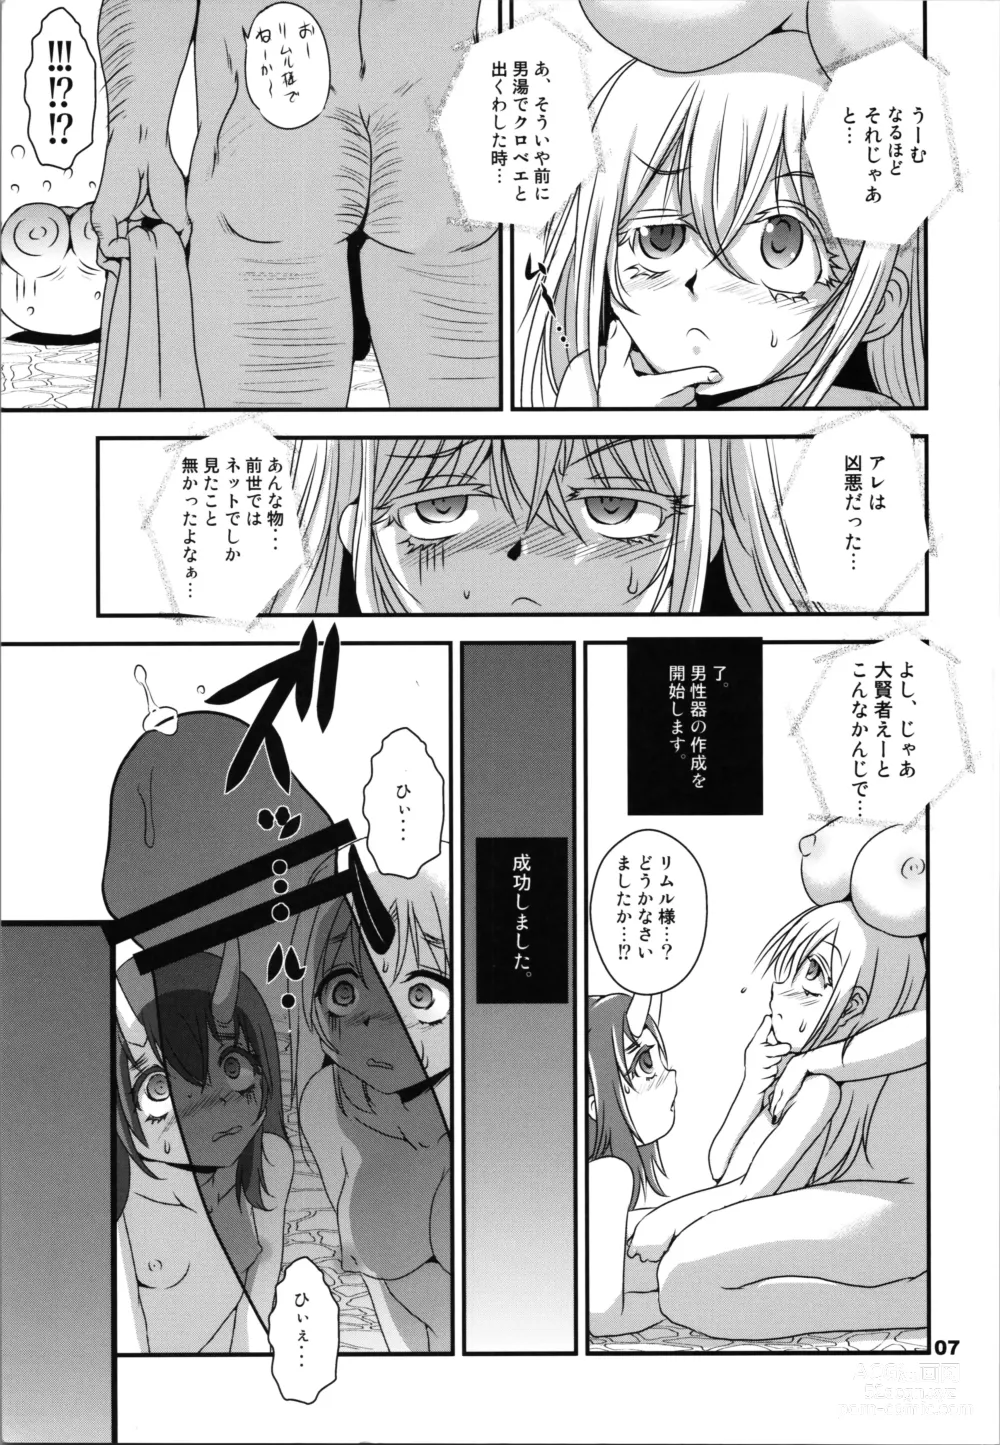 Page 7 of doujinshi Ise  Monogatari